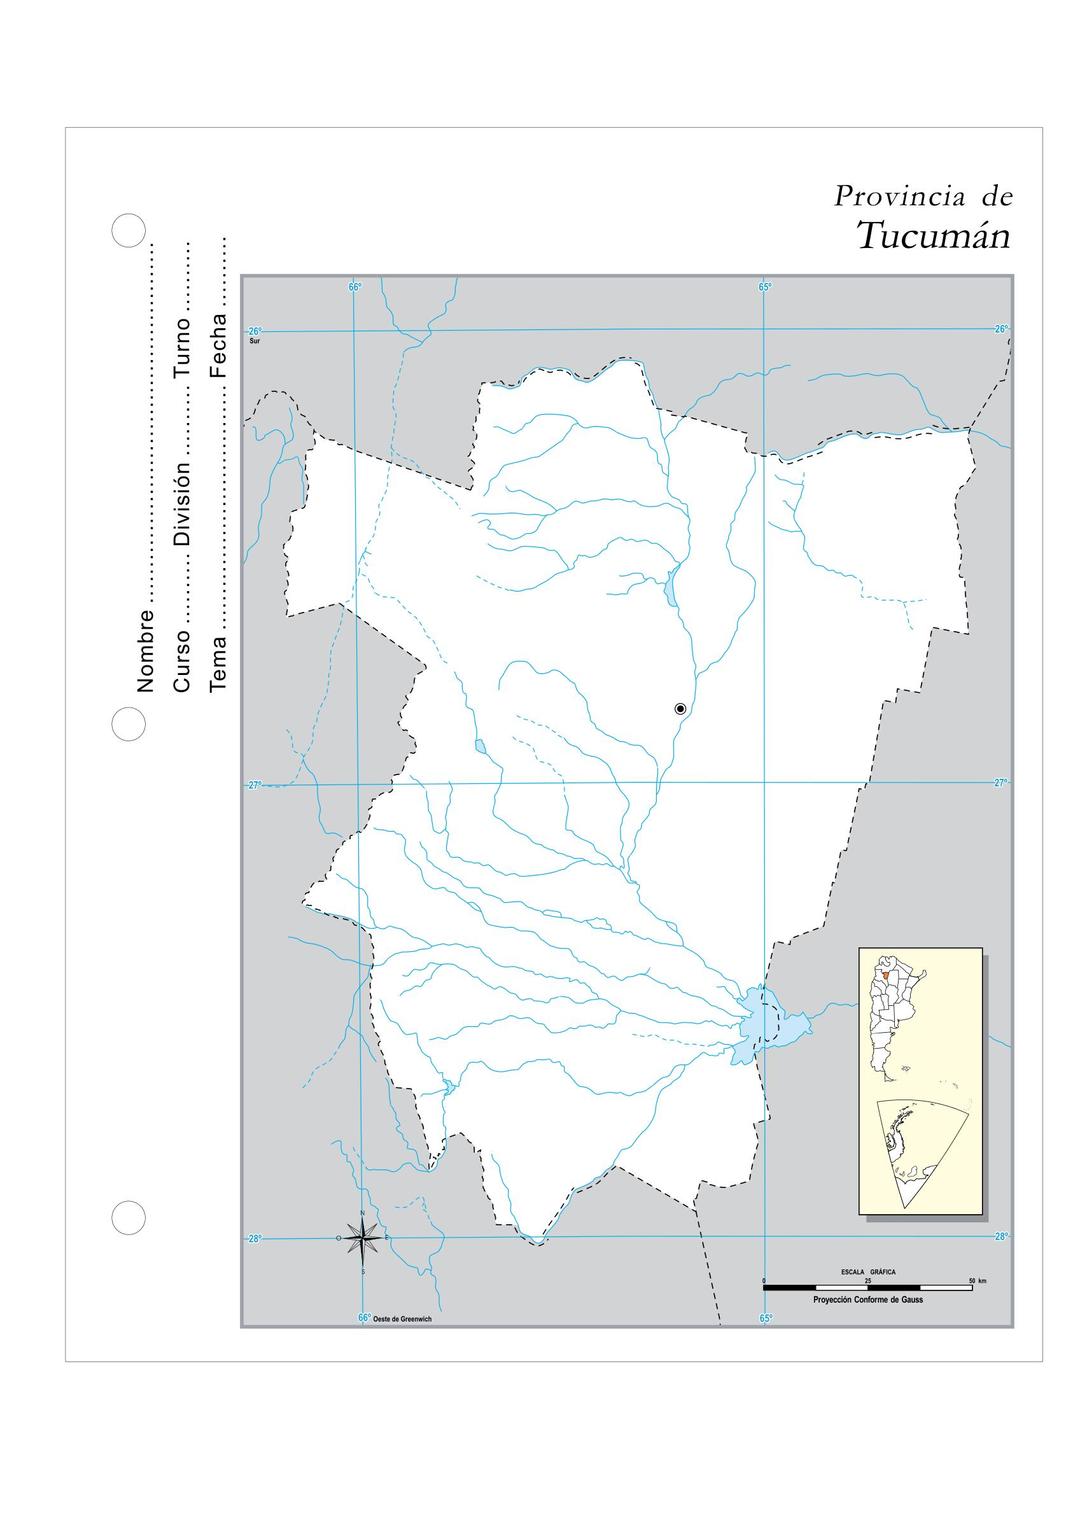 Provincia de Tucuman png transparent